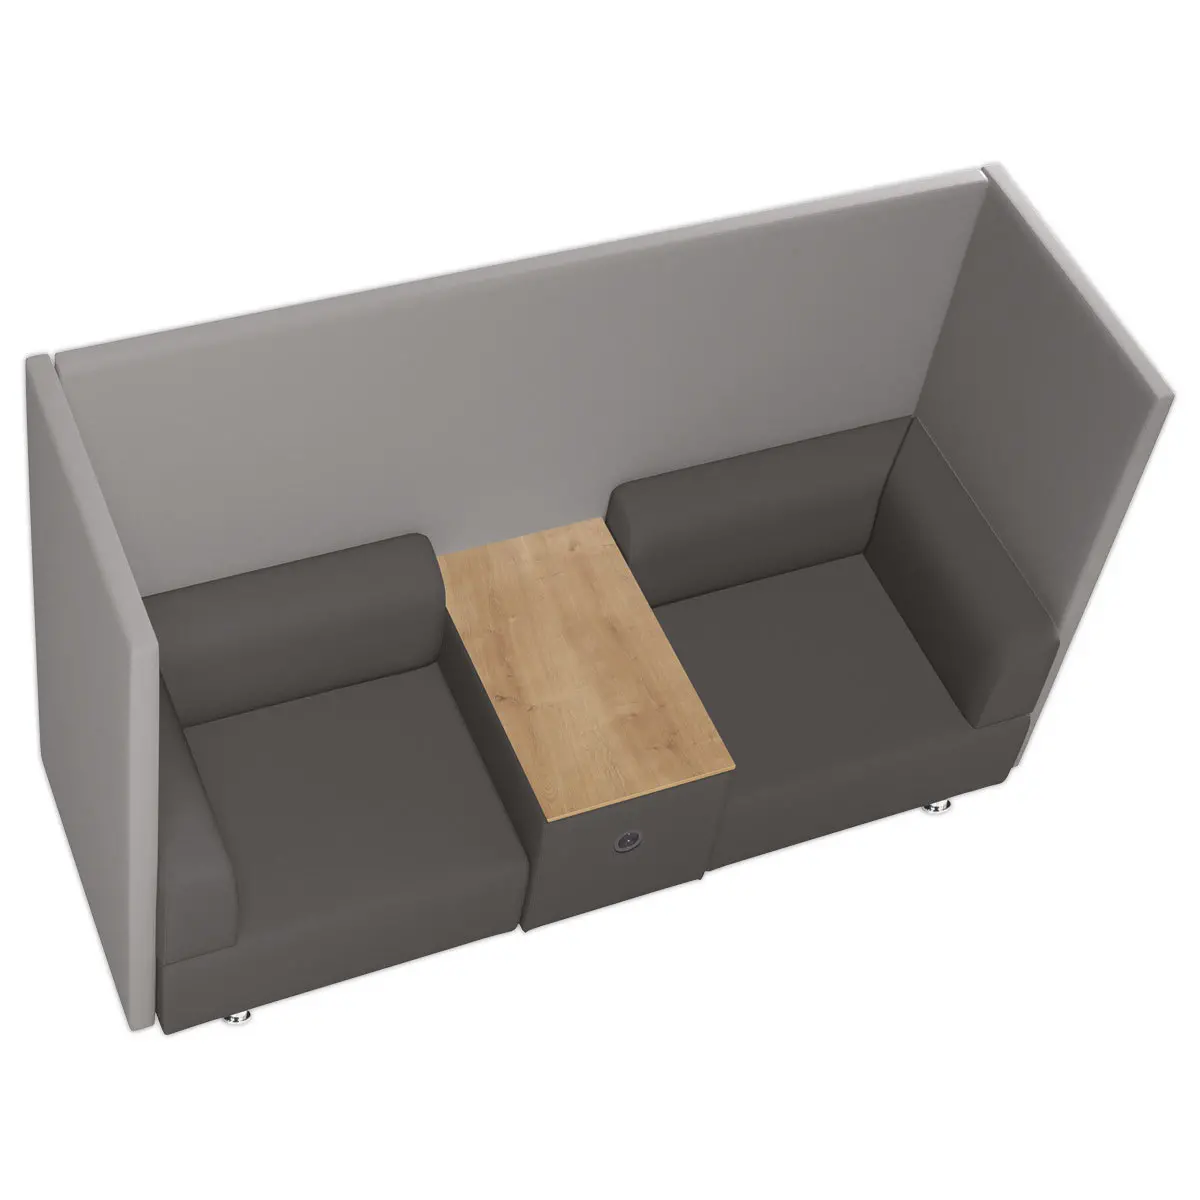 Sofa acoustique 2 places en tissu ignifuge, tablette de travail, gris photo du produit